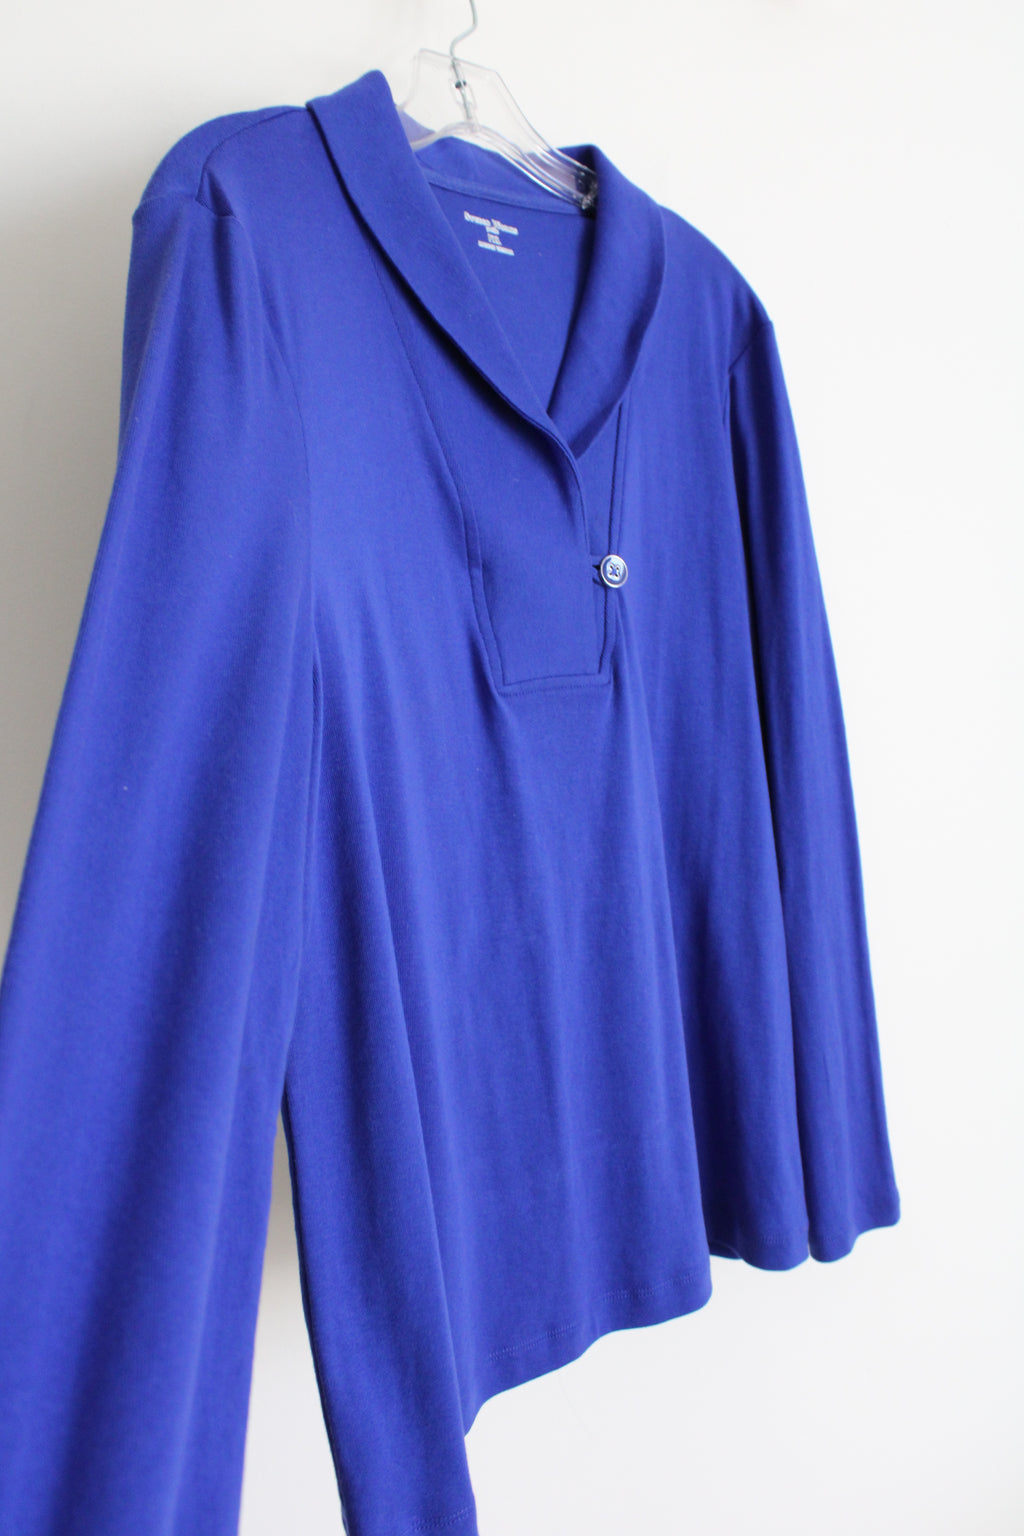 NEW Studio Works Deep Watre Blue Long Sleeved Shirt | XL Petite